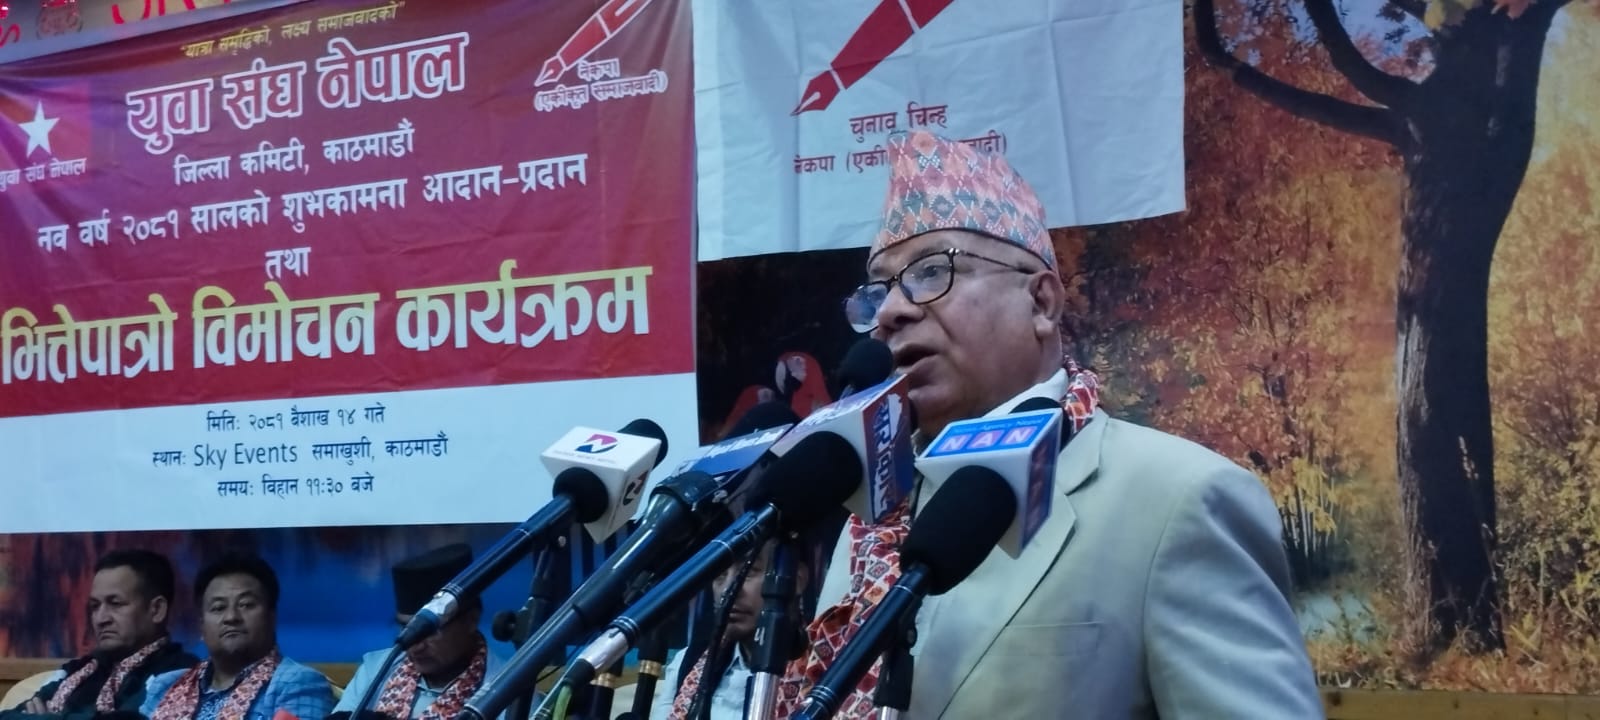 युवाहरुको अनुभव, ज्ञान, सीप र पुँजीलाई राज्यले प्रोत्साहित गर्नुपर्छः अध्यक्ष नेपाल